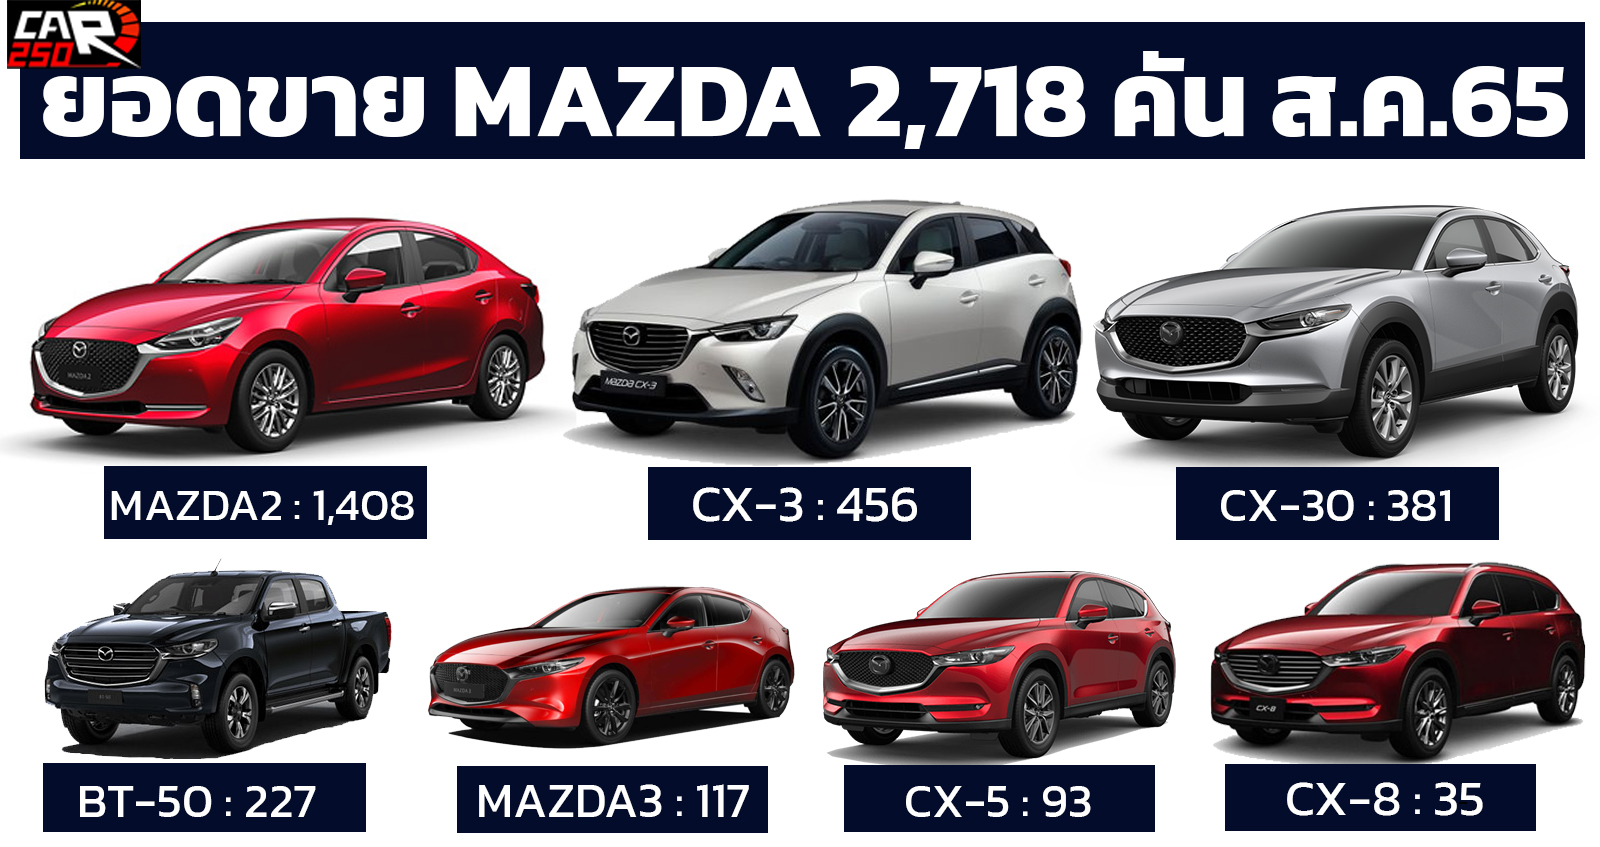 ยอดขาย MAZDA ในไทย รวม 2,718 คัน สิงหาคม 2565